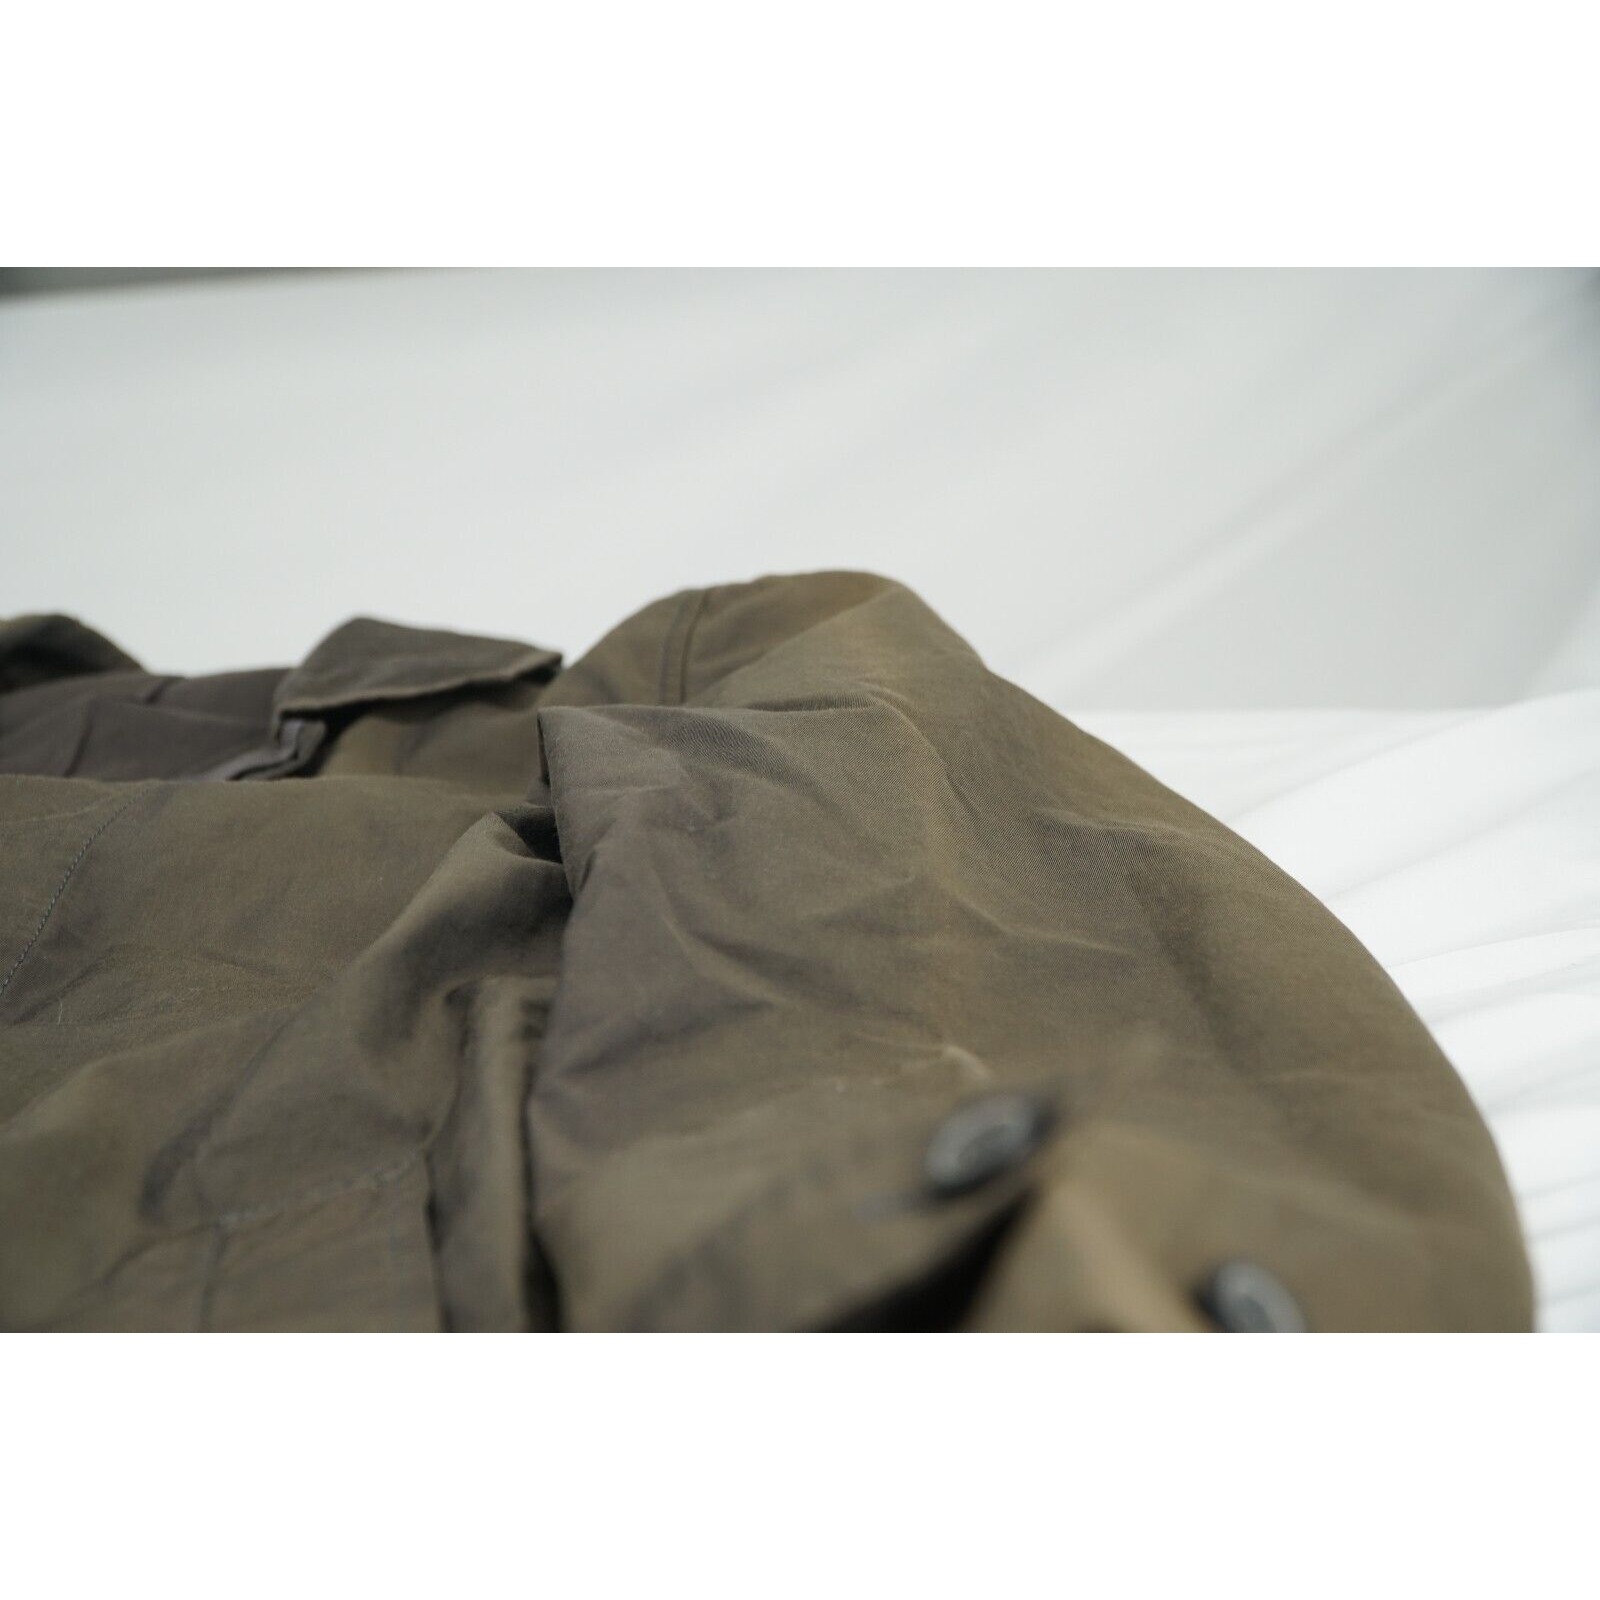 Lanvin Trench Coat Brown Iridescent - Sz 50 - 13